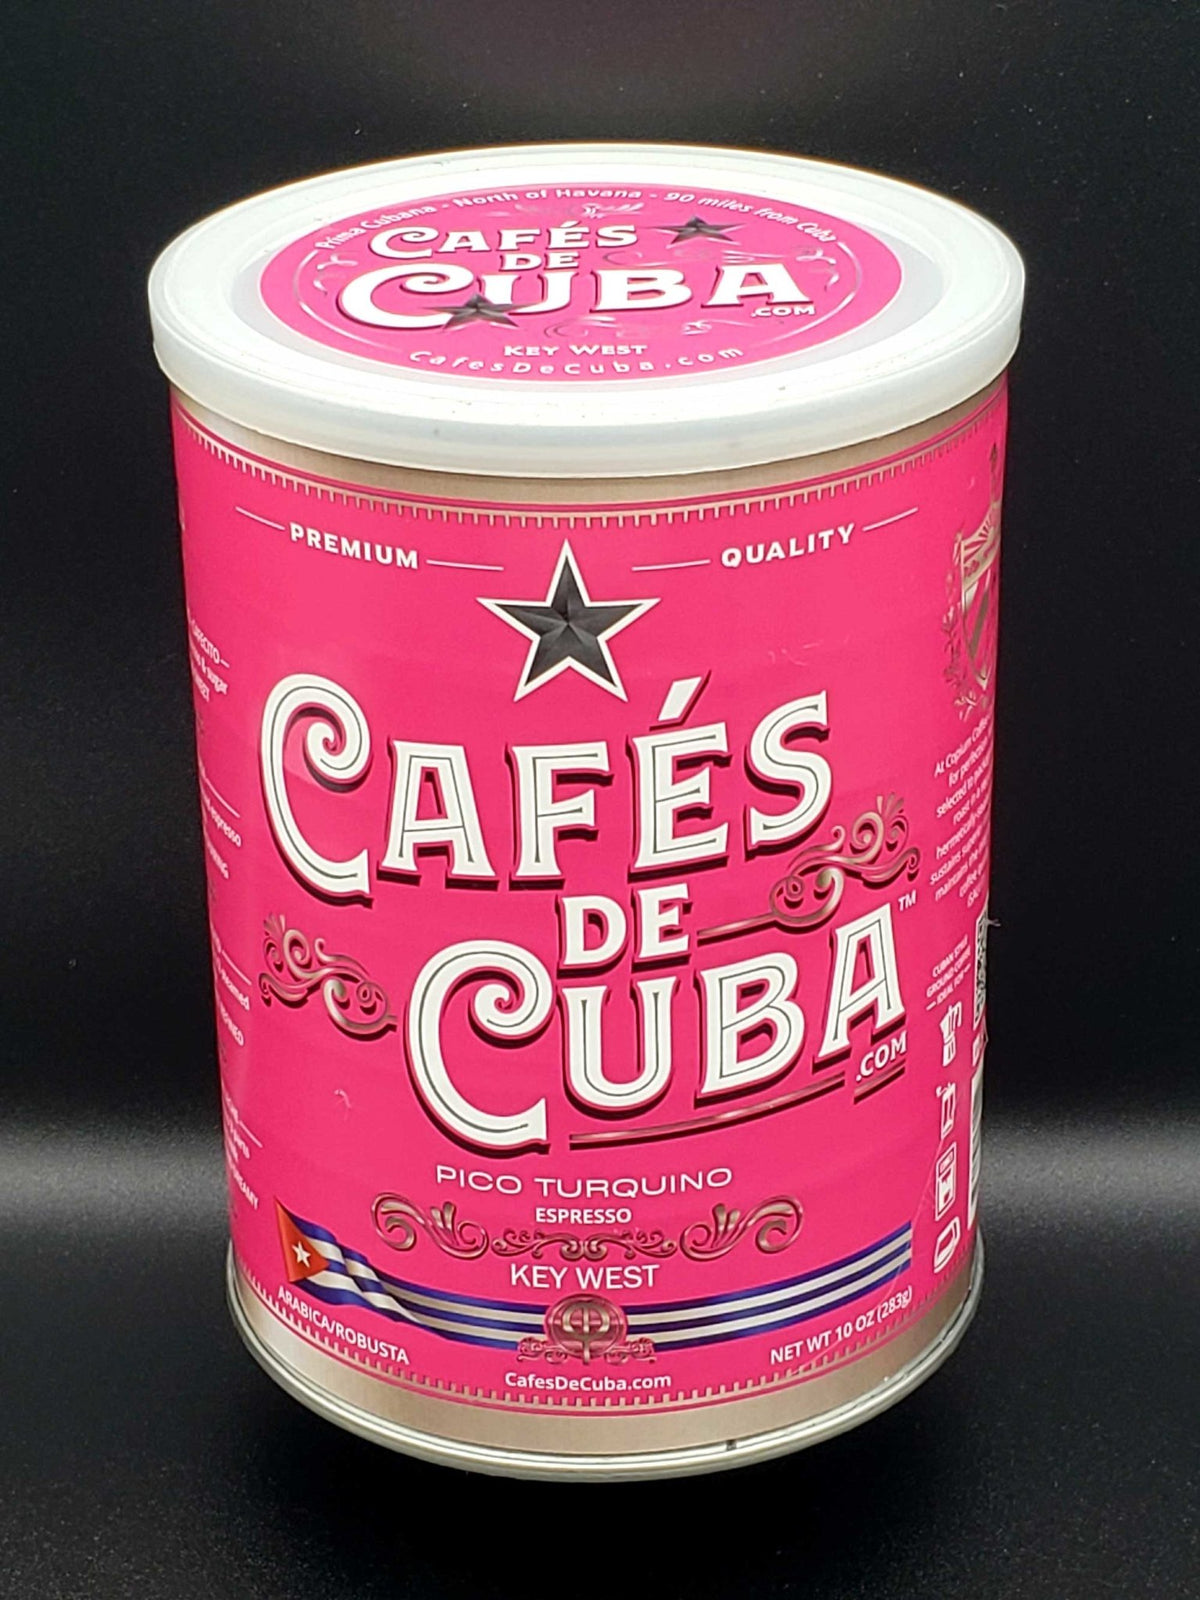 PICO TURQUINO - Arabica / Robusta - Intensity 10 - Cafés De Cuba